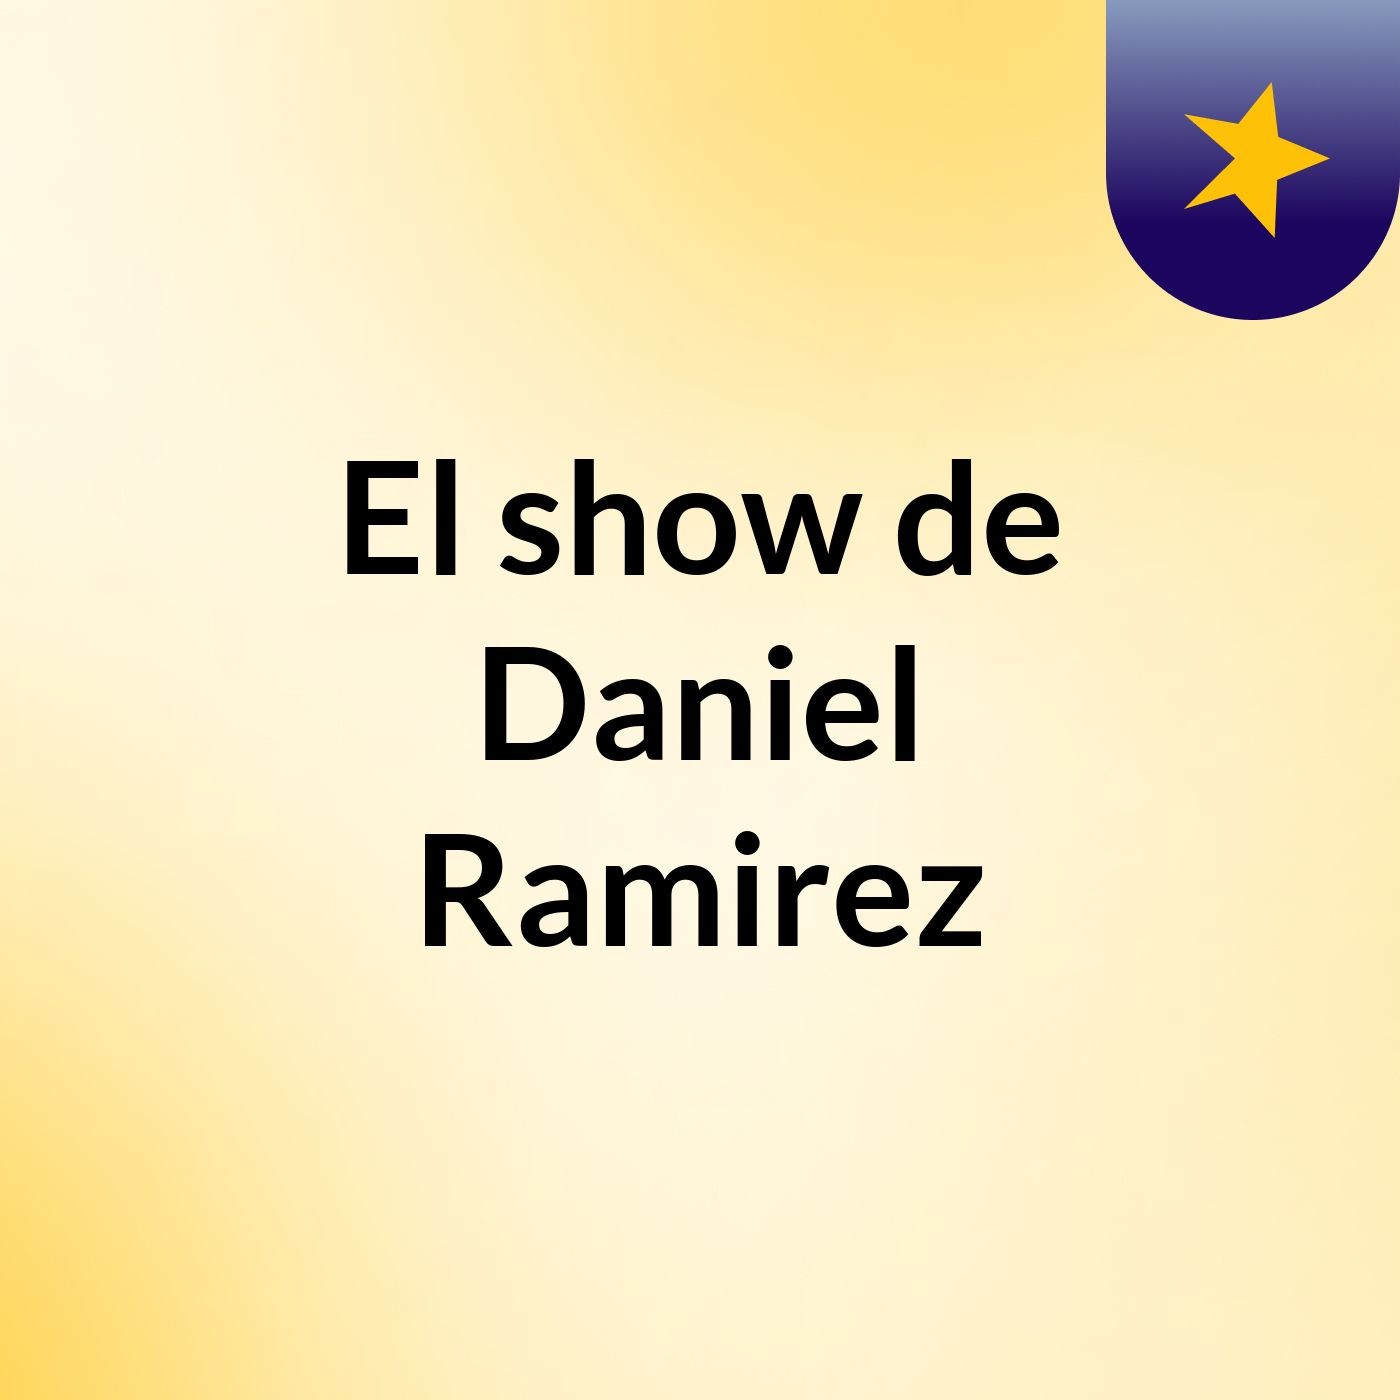 El show de Daniel Ramirez